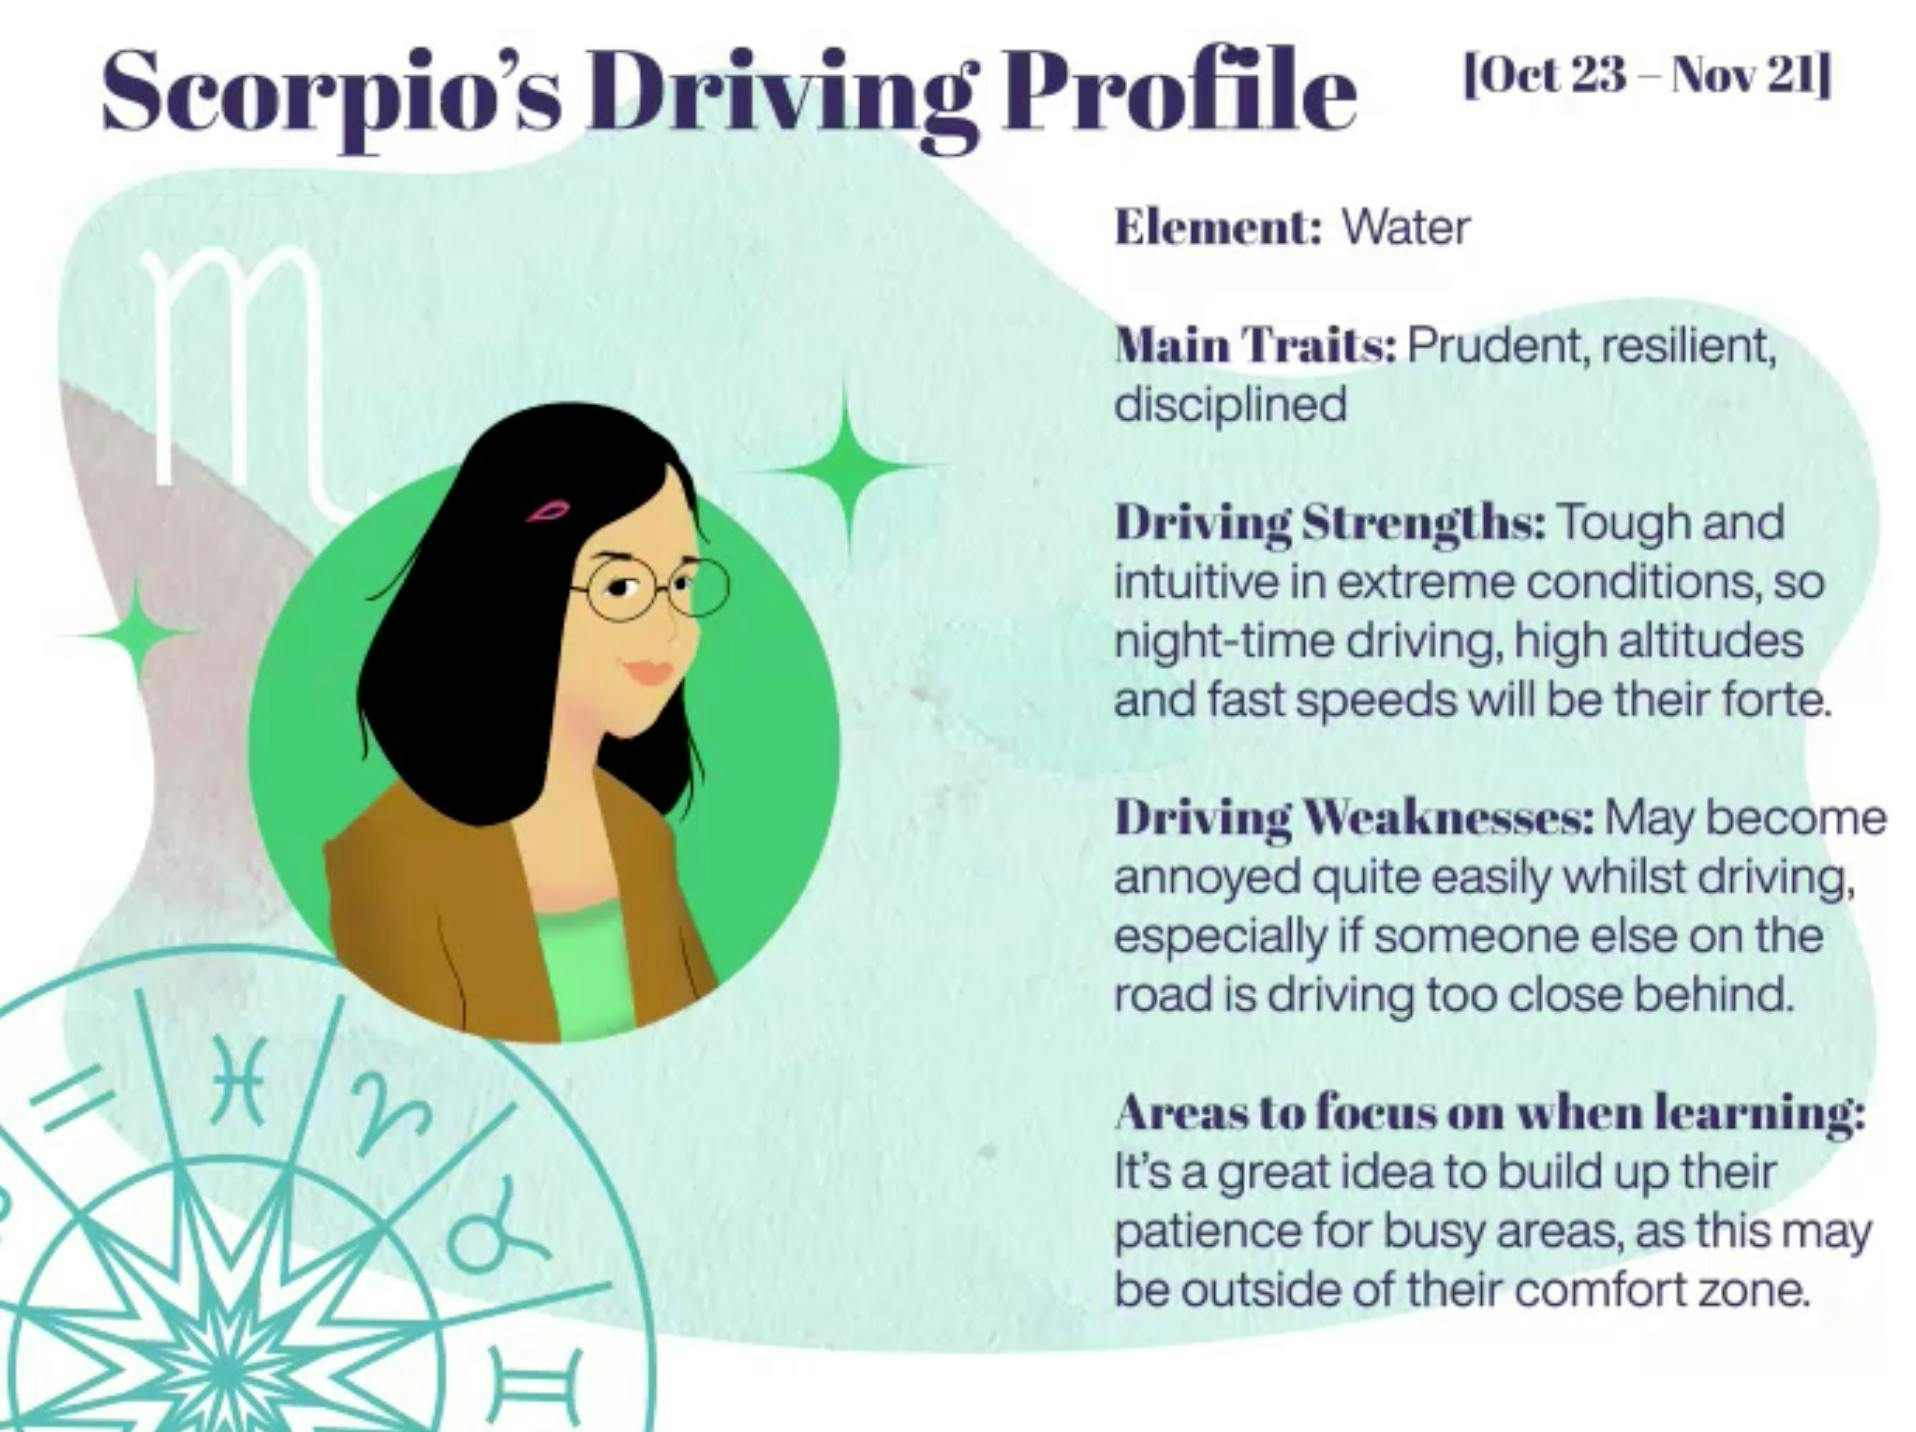 Scorpio driving profile